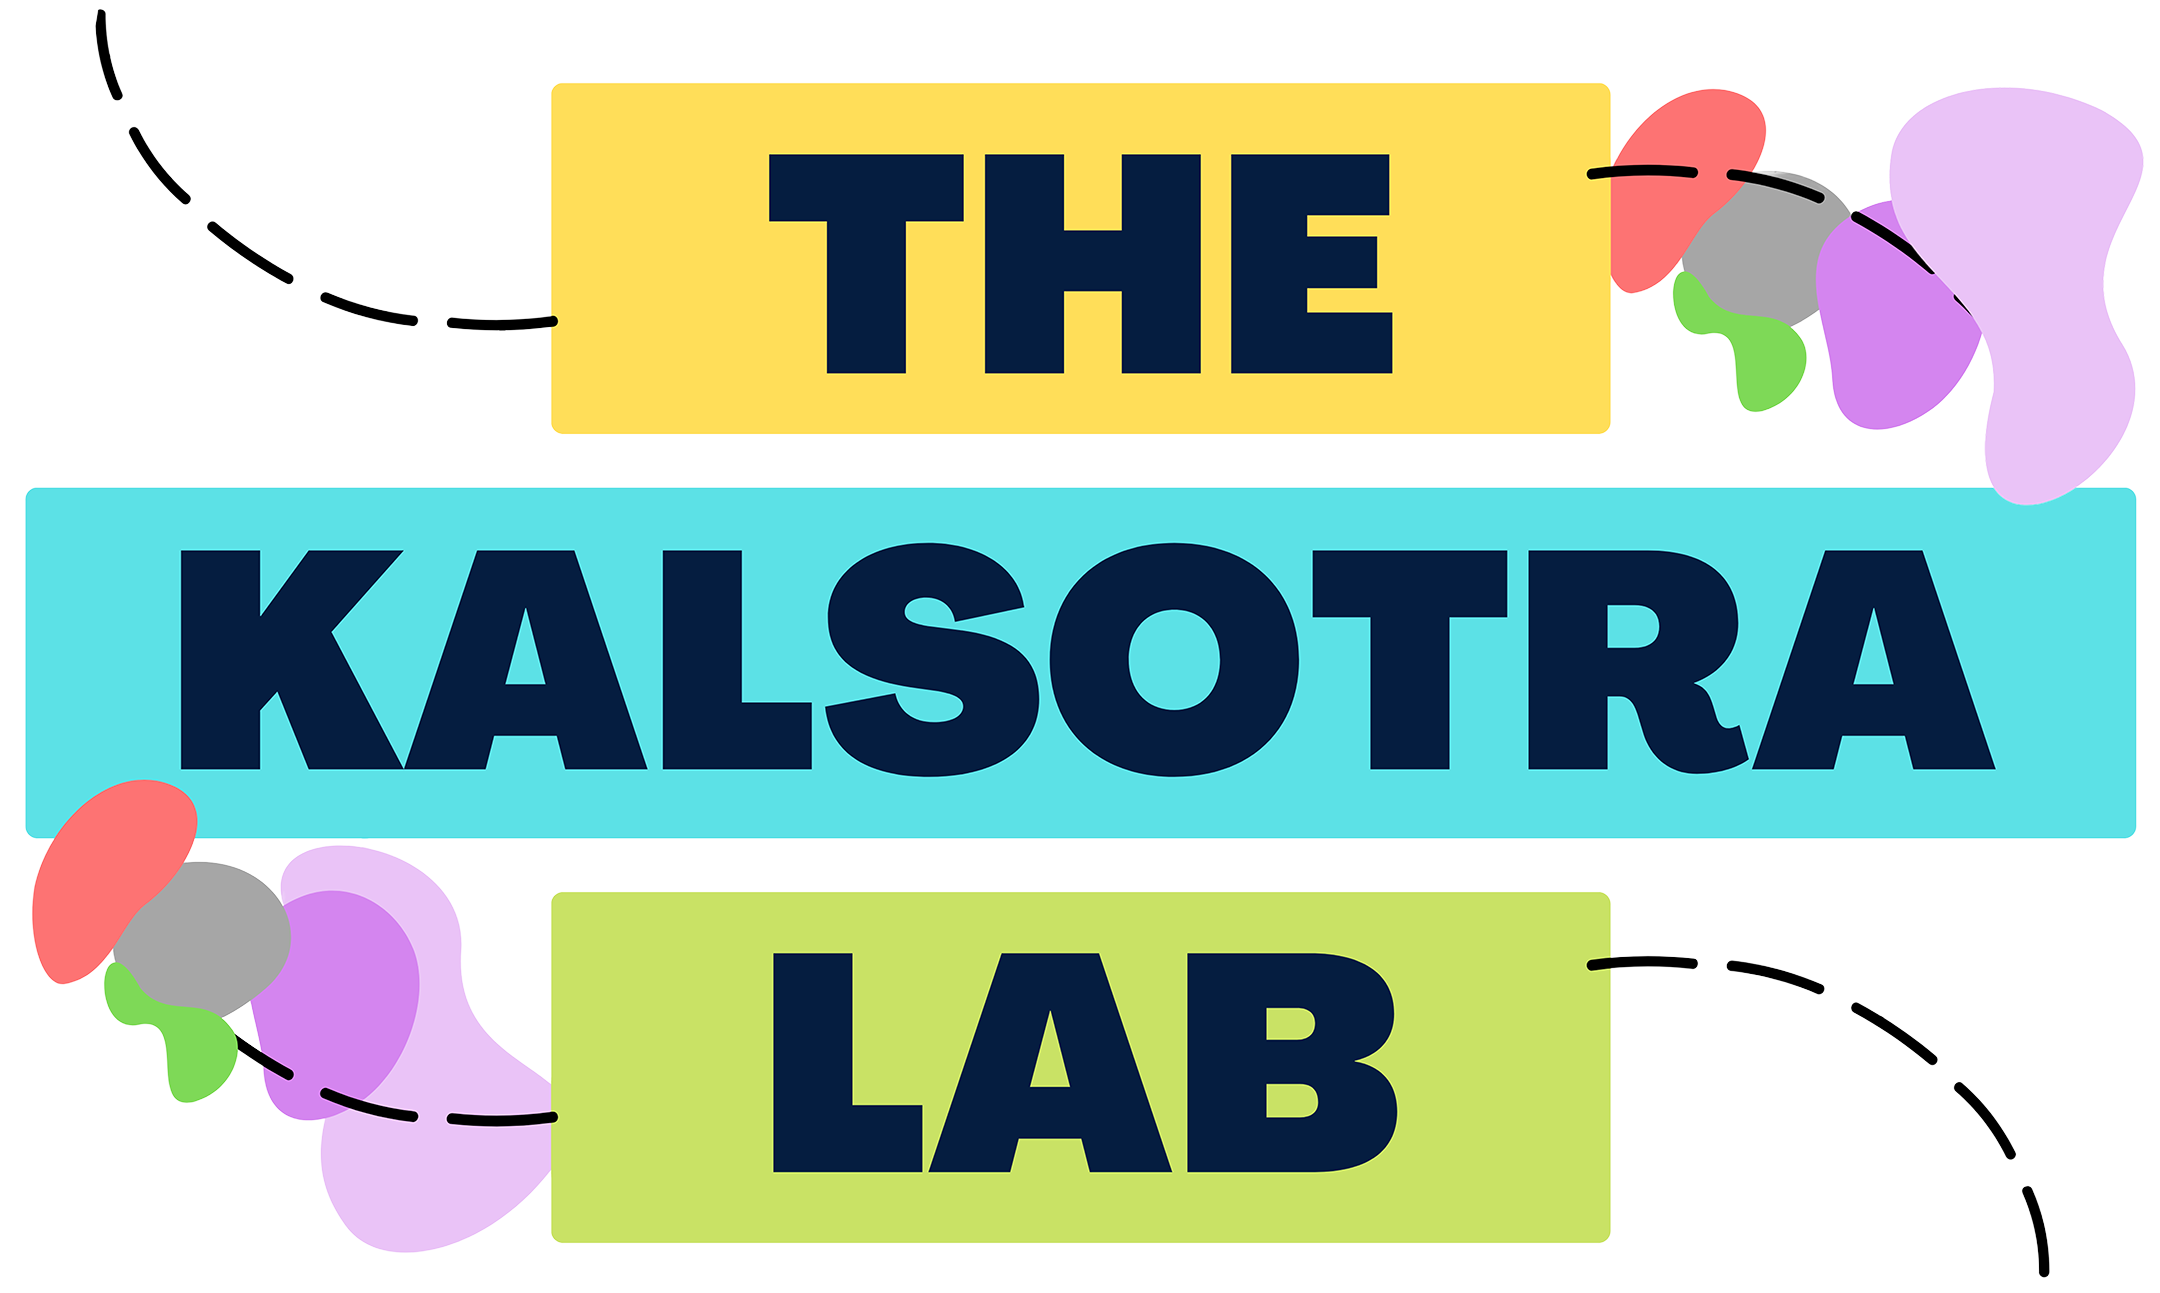 Kalsotra Lab